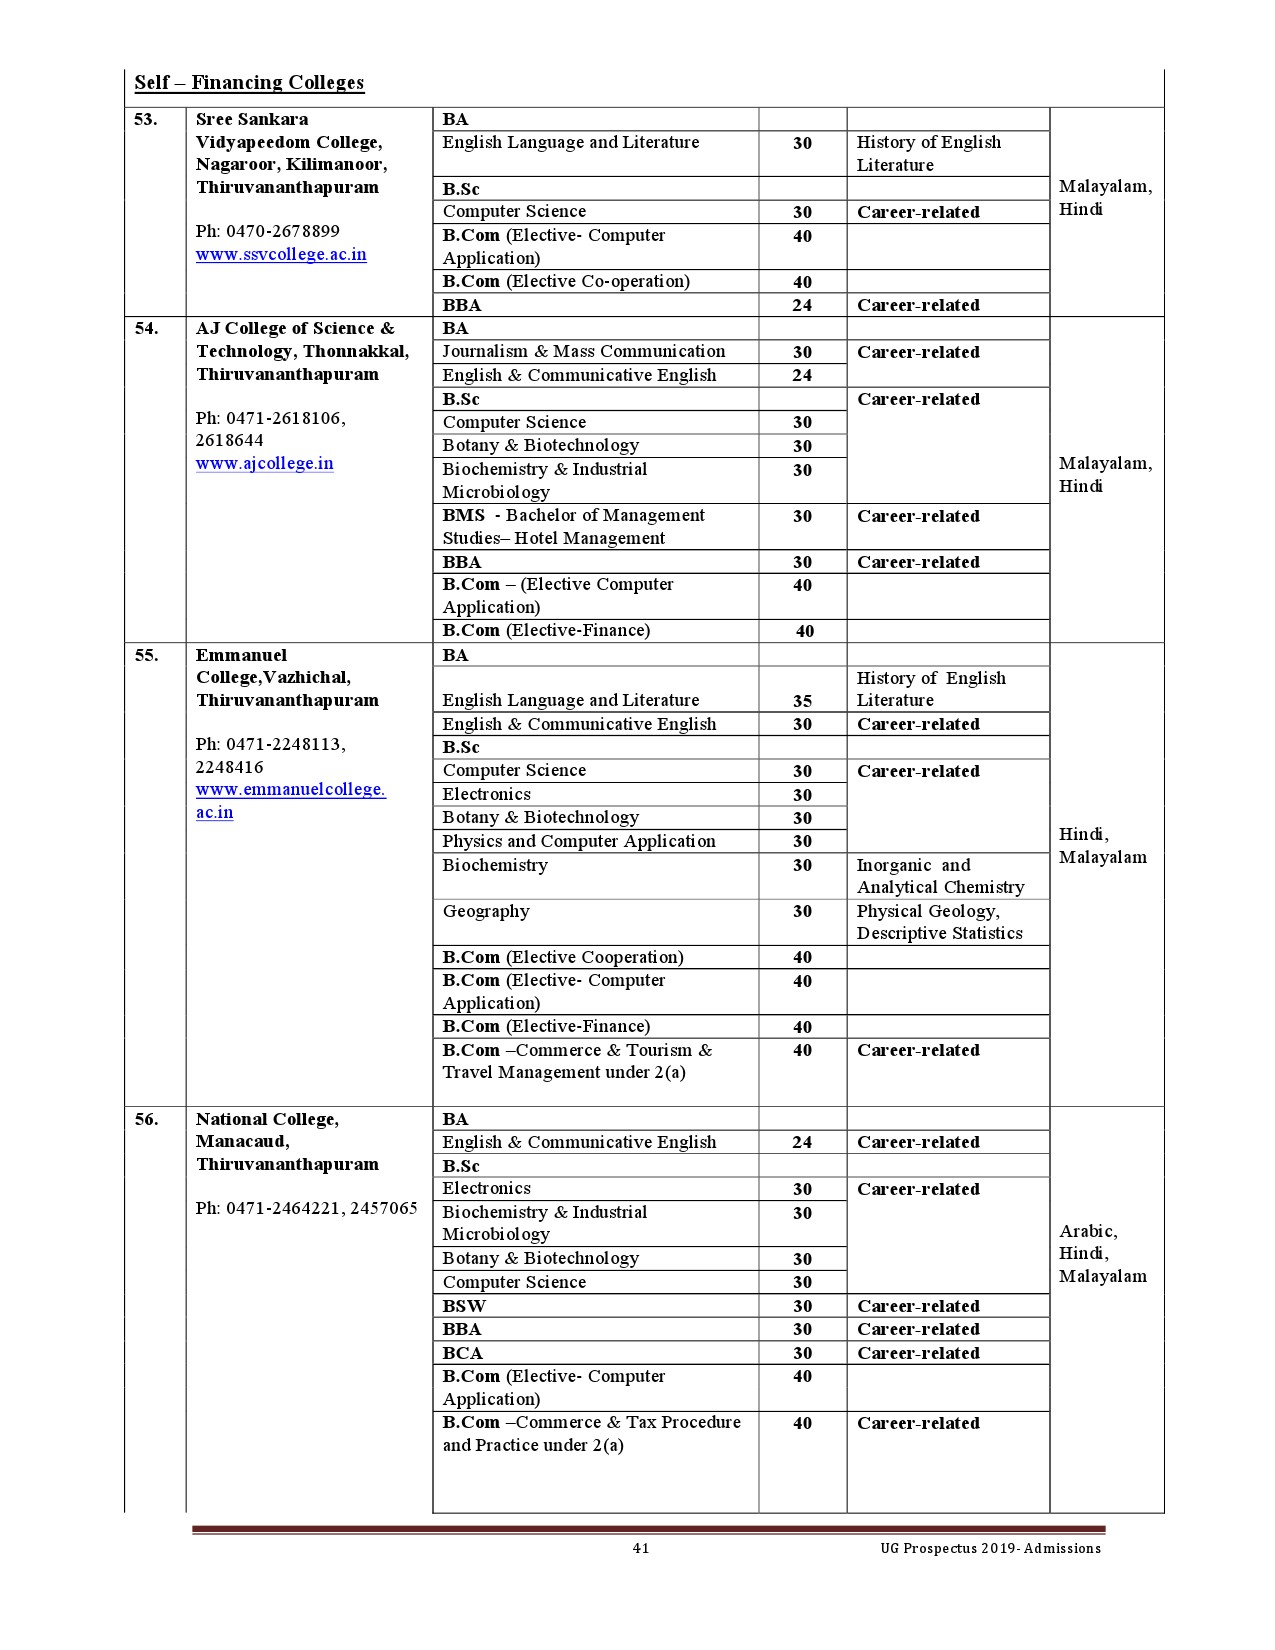 Kerala University UG Admission Prospectus 2019 - Notification Image 41